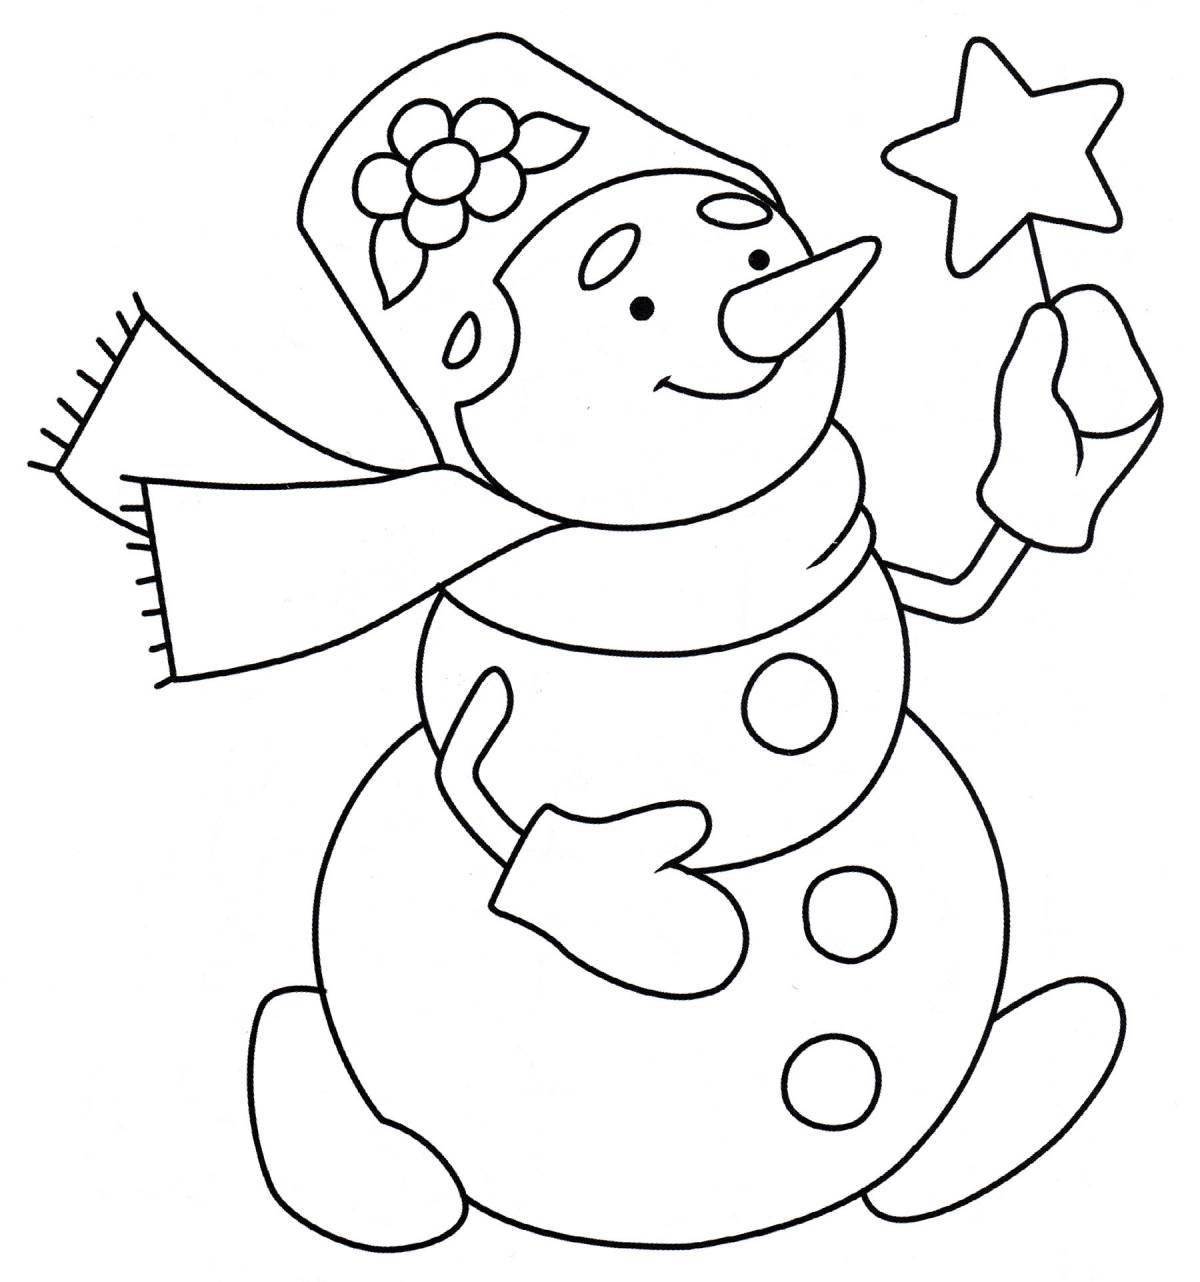 Раскраска обаятельный снеговик для детей